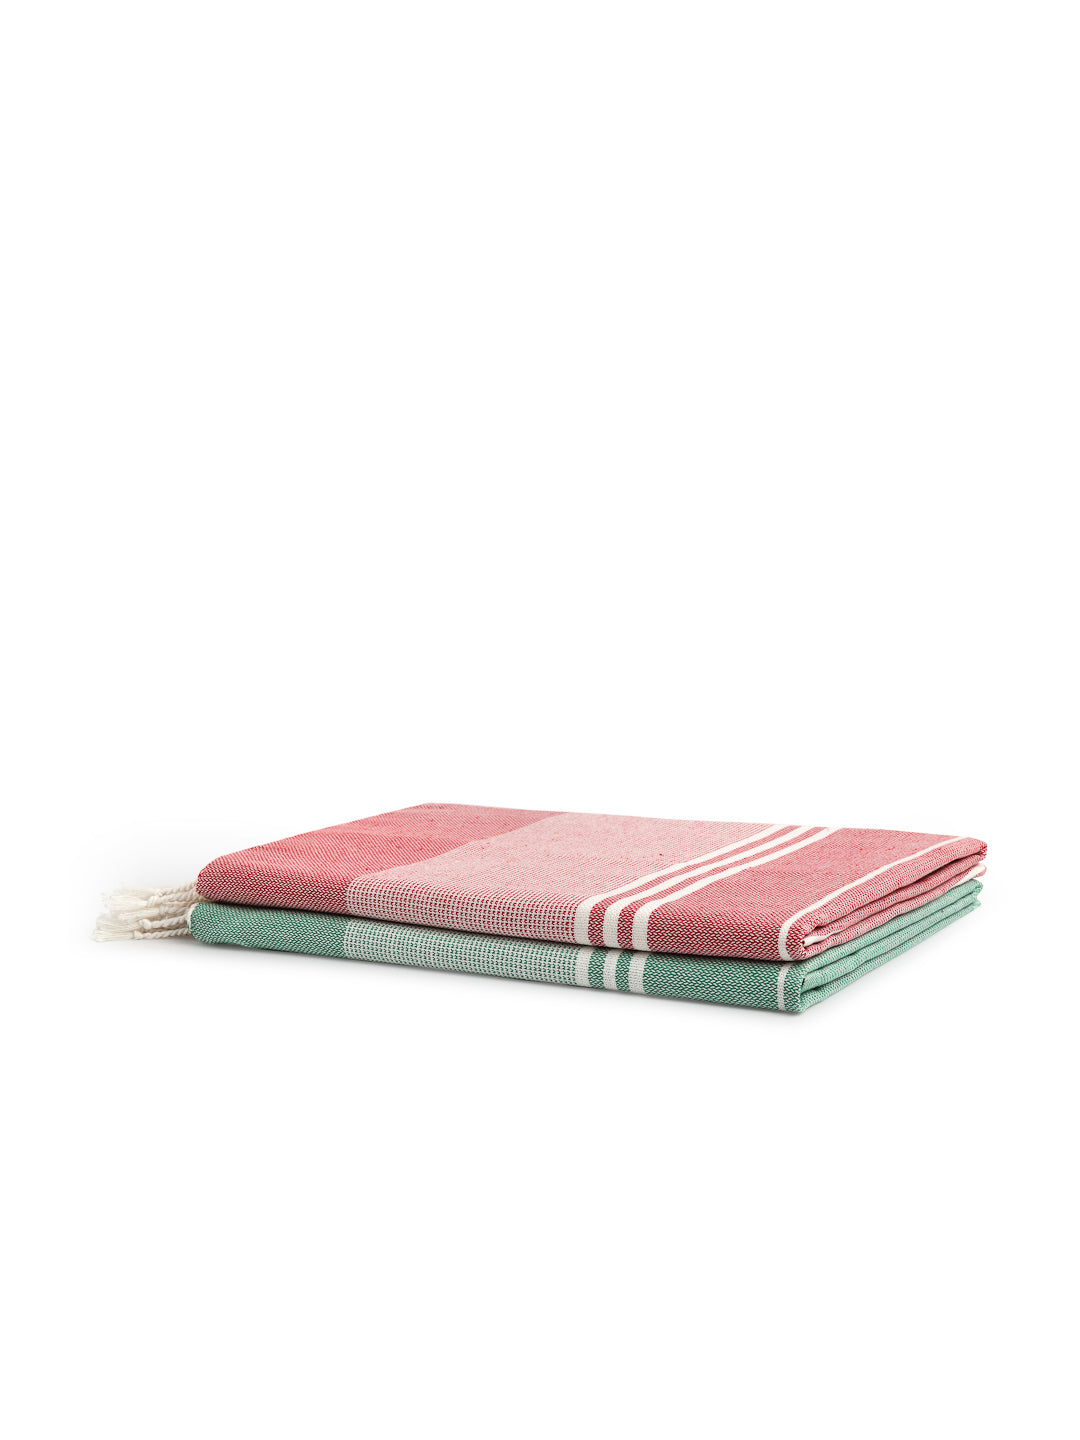 Arrabi Multi Stripes Handwoven Cotton Bath Towel (Set of 2) (150 x 75 cm)